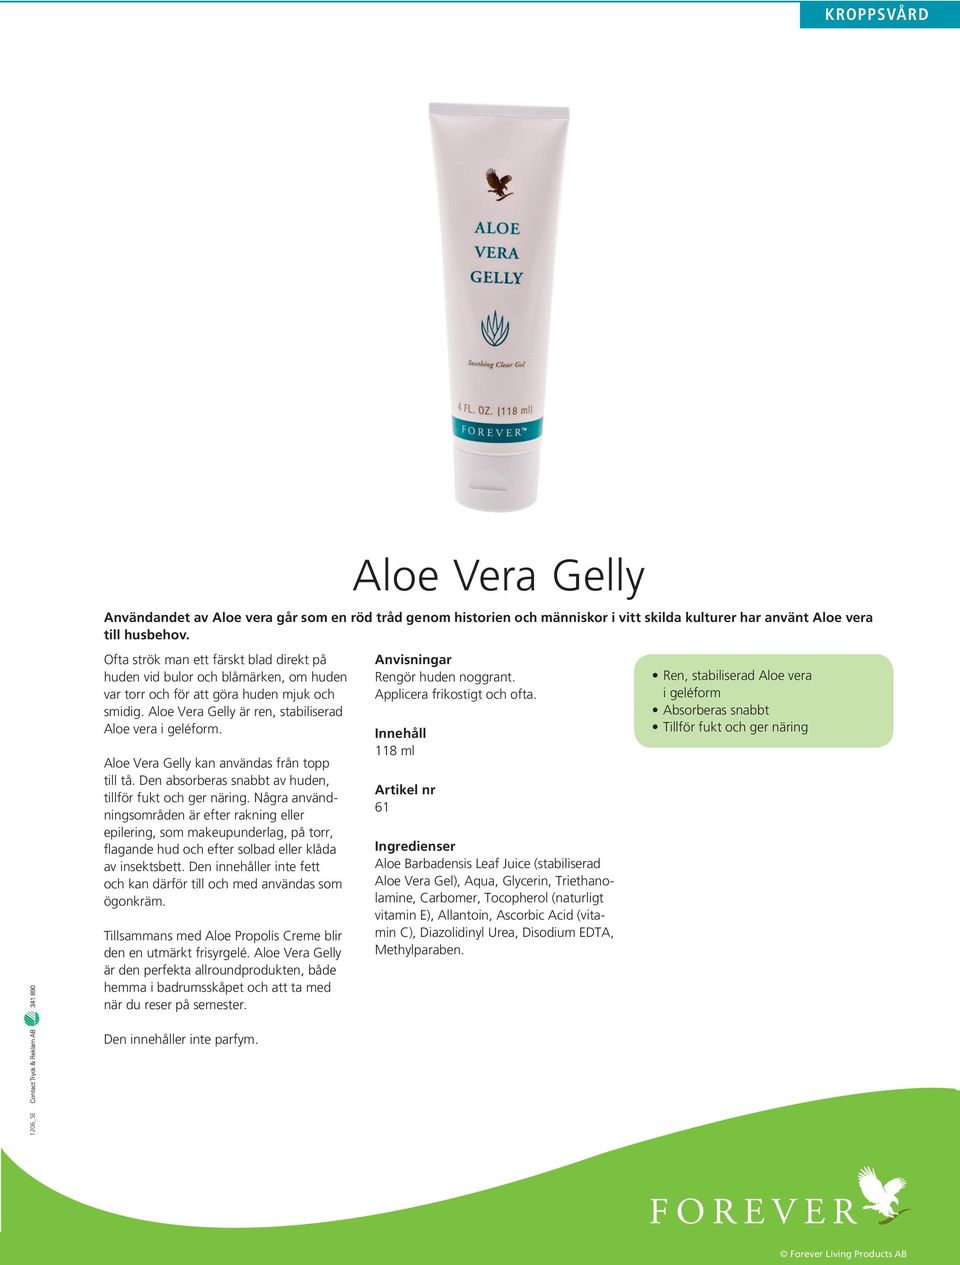 Aloe Vera Gelly kan användas från topp till tå. Den absorberas snabbt av huden, tillför fukt och ger näring.